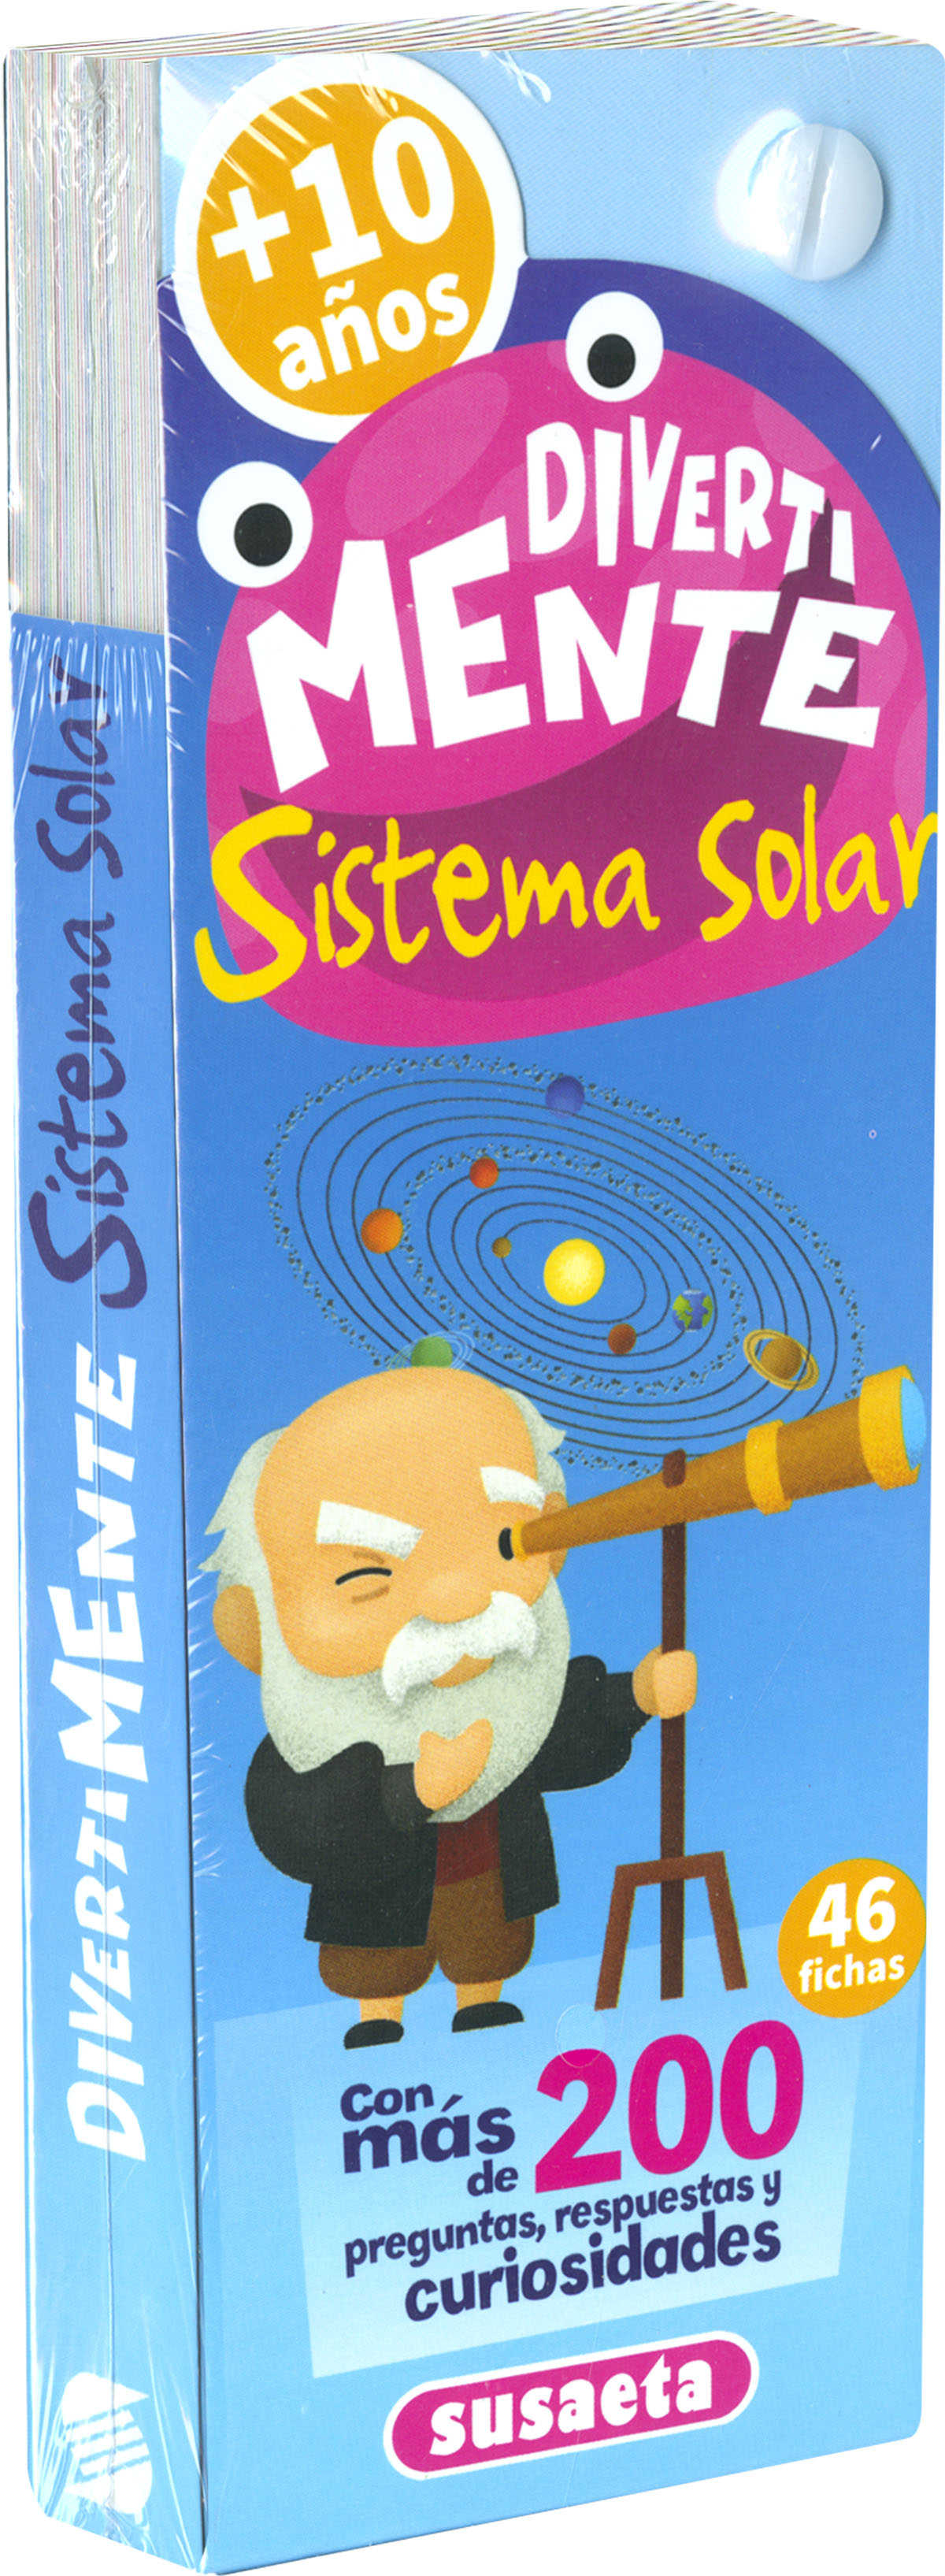 Sistema solar + de 10 años